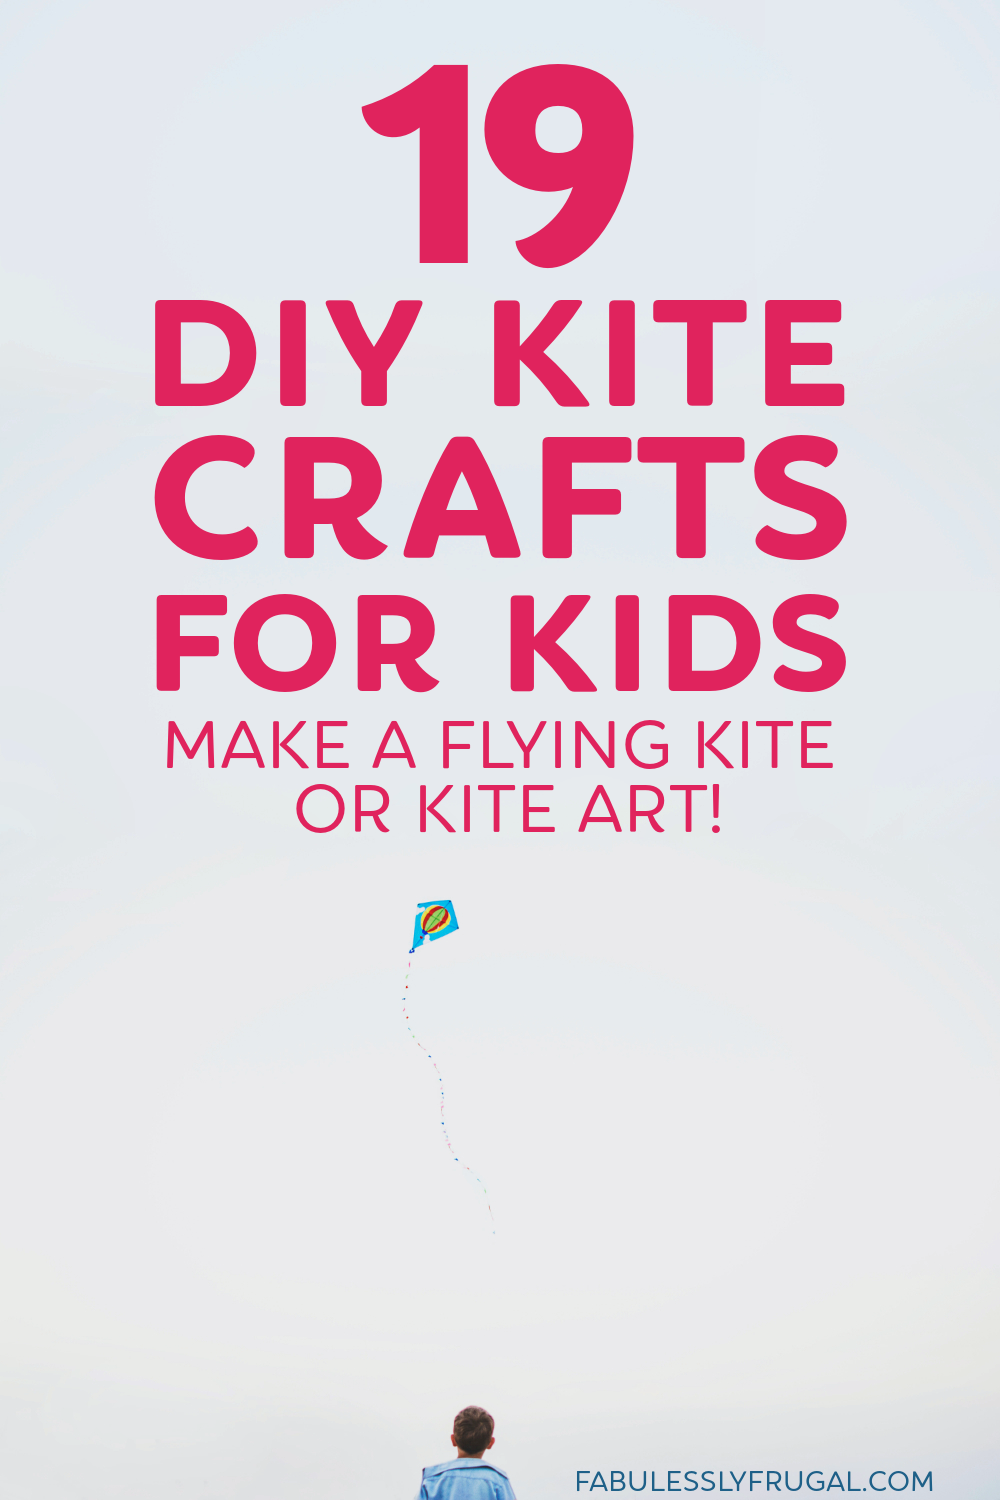 DIY kite crafts for kids